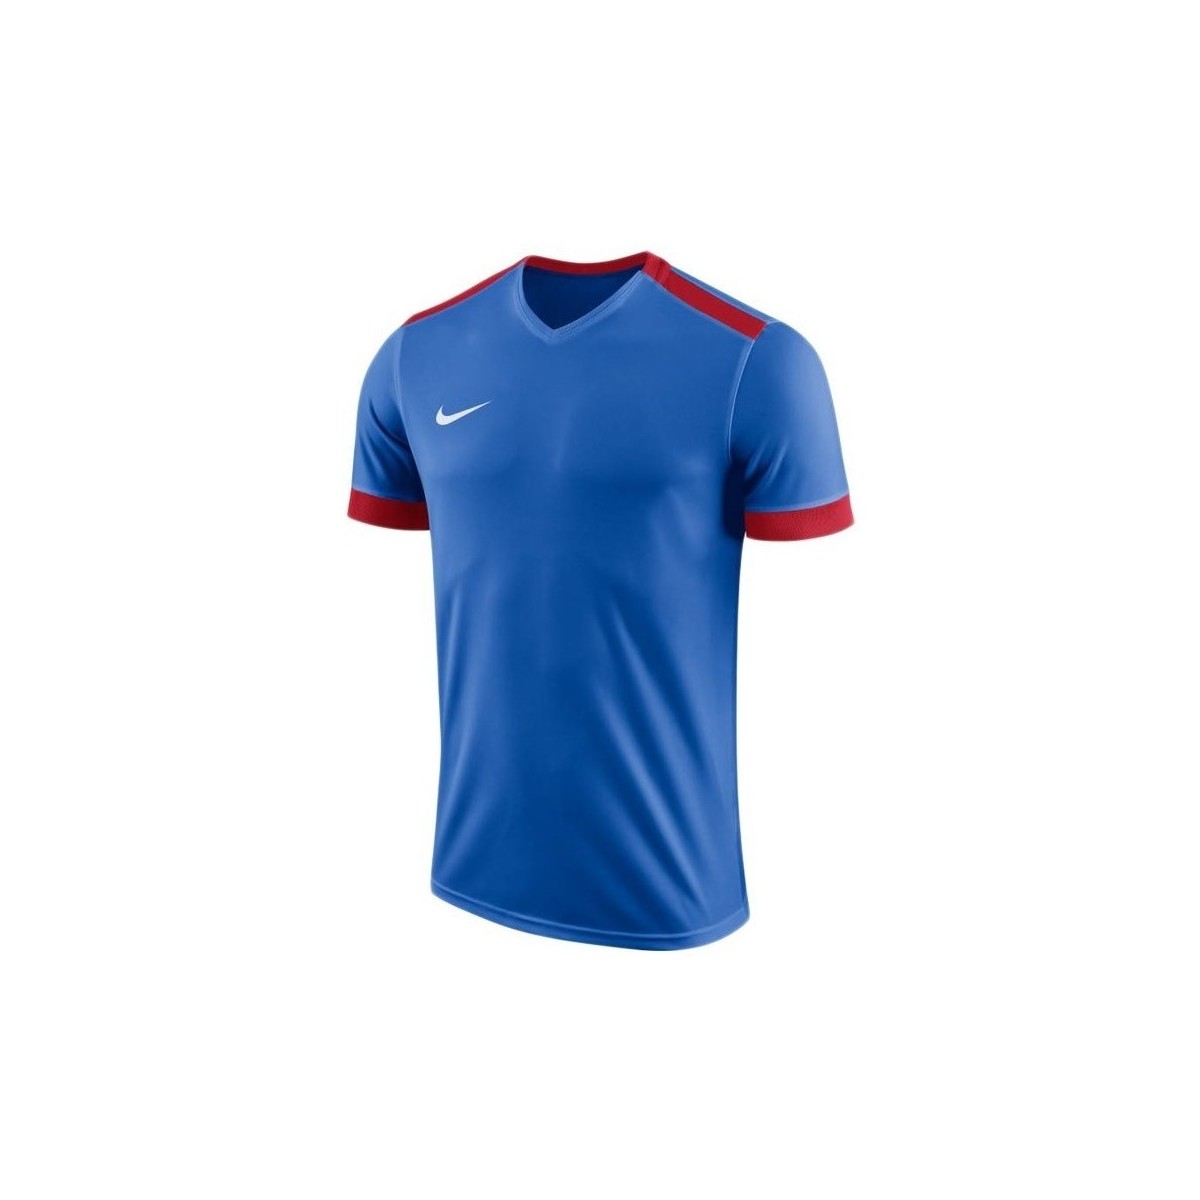 Textil Muži Trička s krátkým rukávem Nike Dry Park Derby II Jersey Modrá